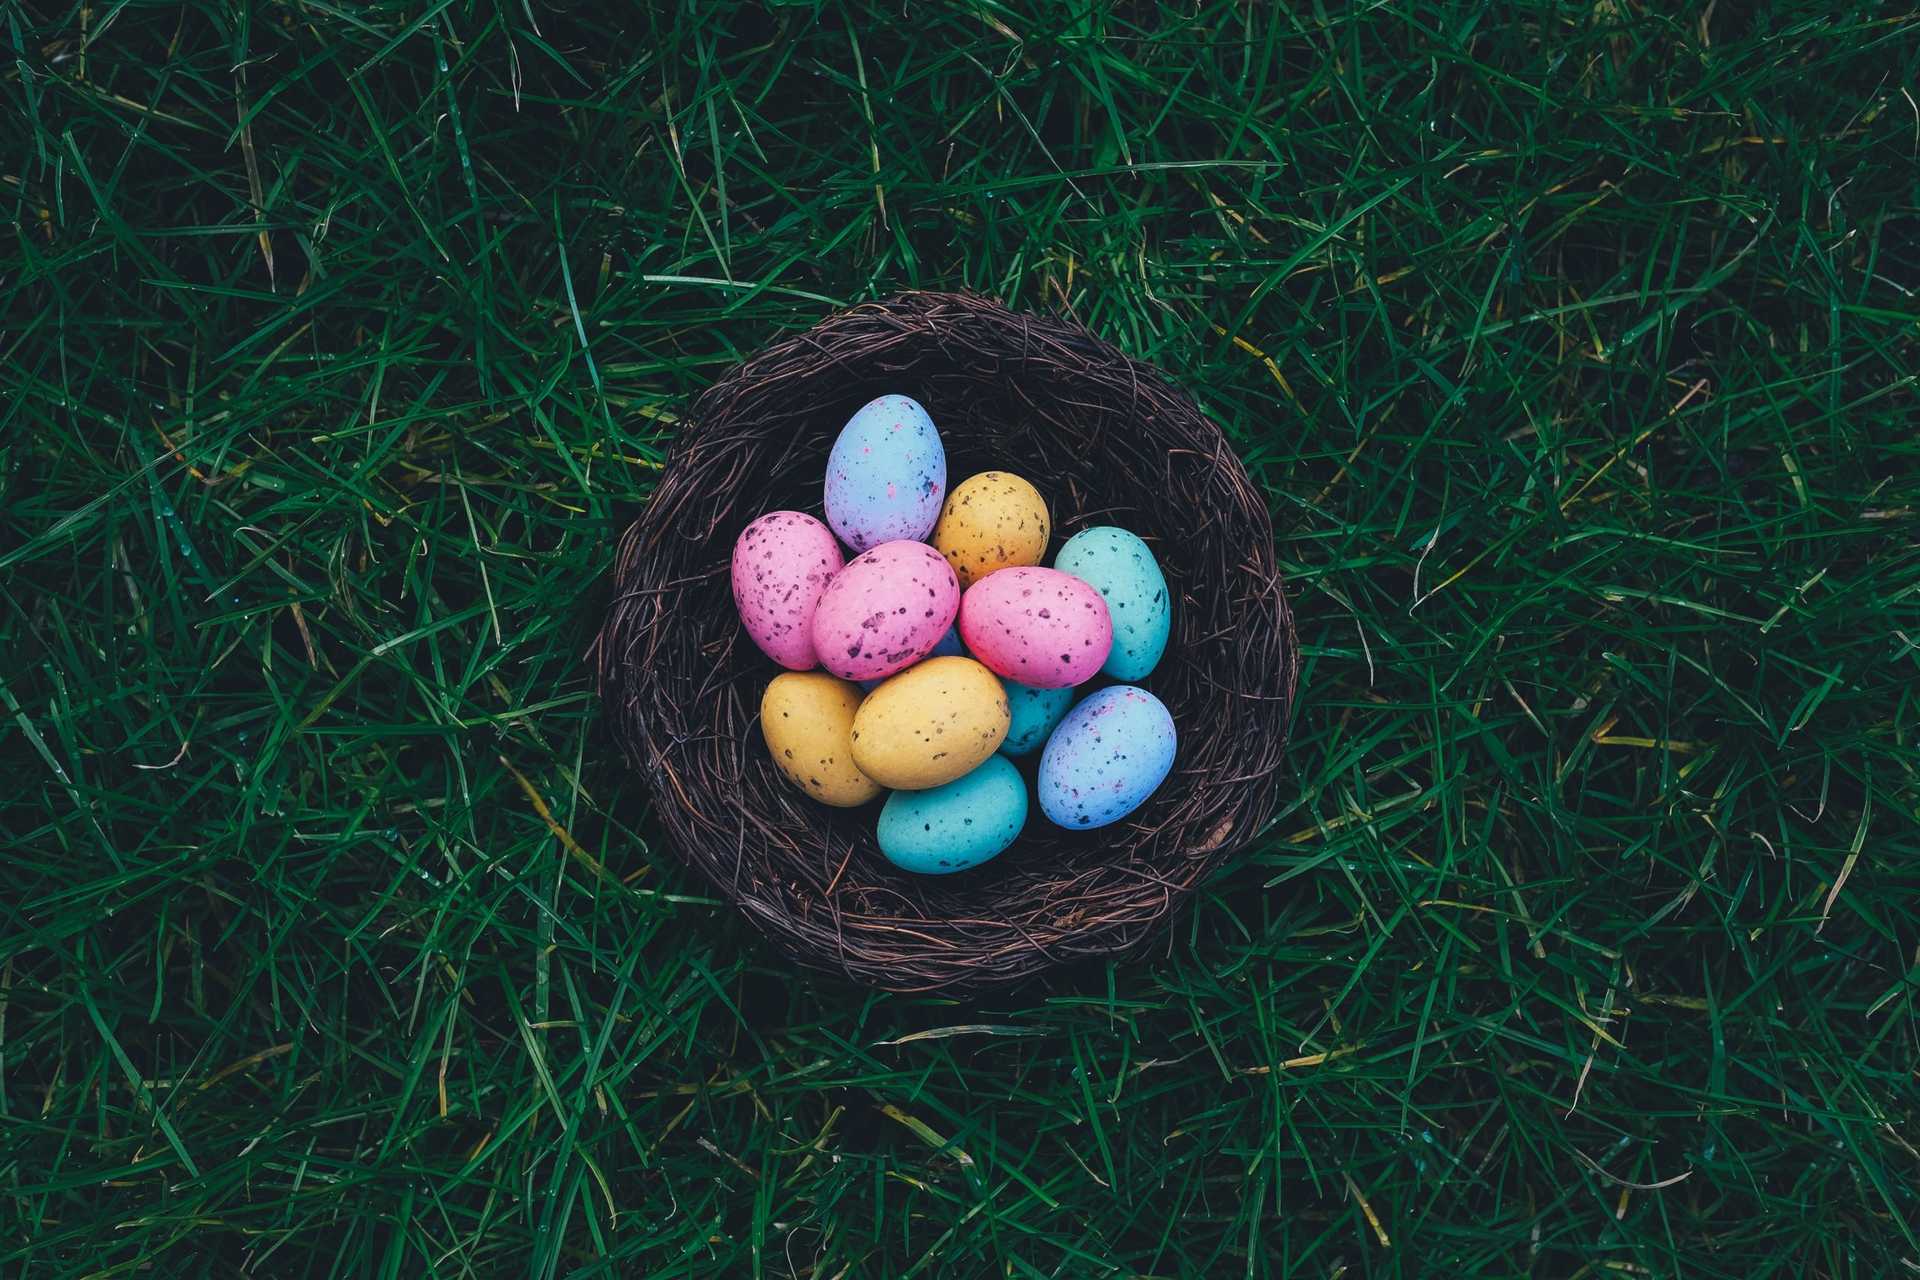 Easter Eggs in Nest on Grass